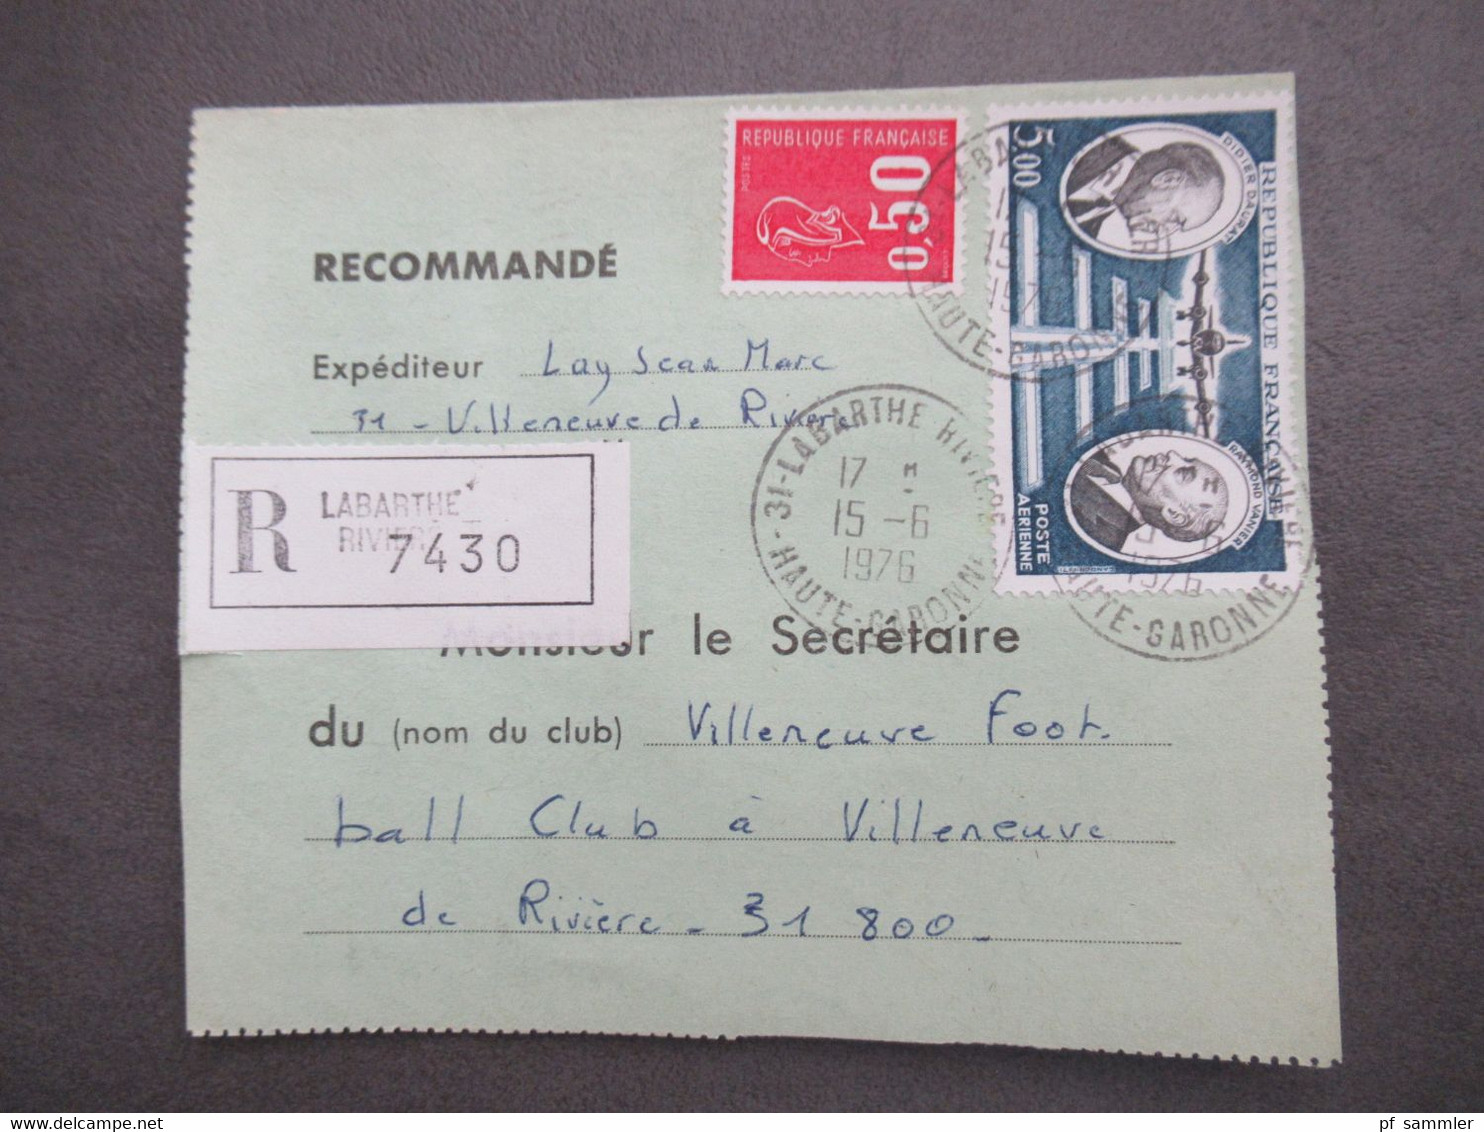 Frankreich 1976 Einschreiben Laberthe Riviere Thematik Fußball Football Club A Villeneuve De Riviere - Covers & Documents